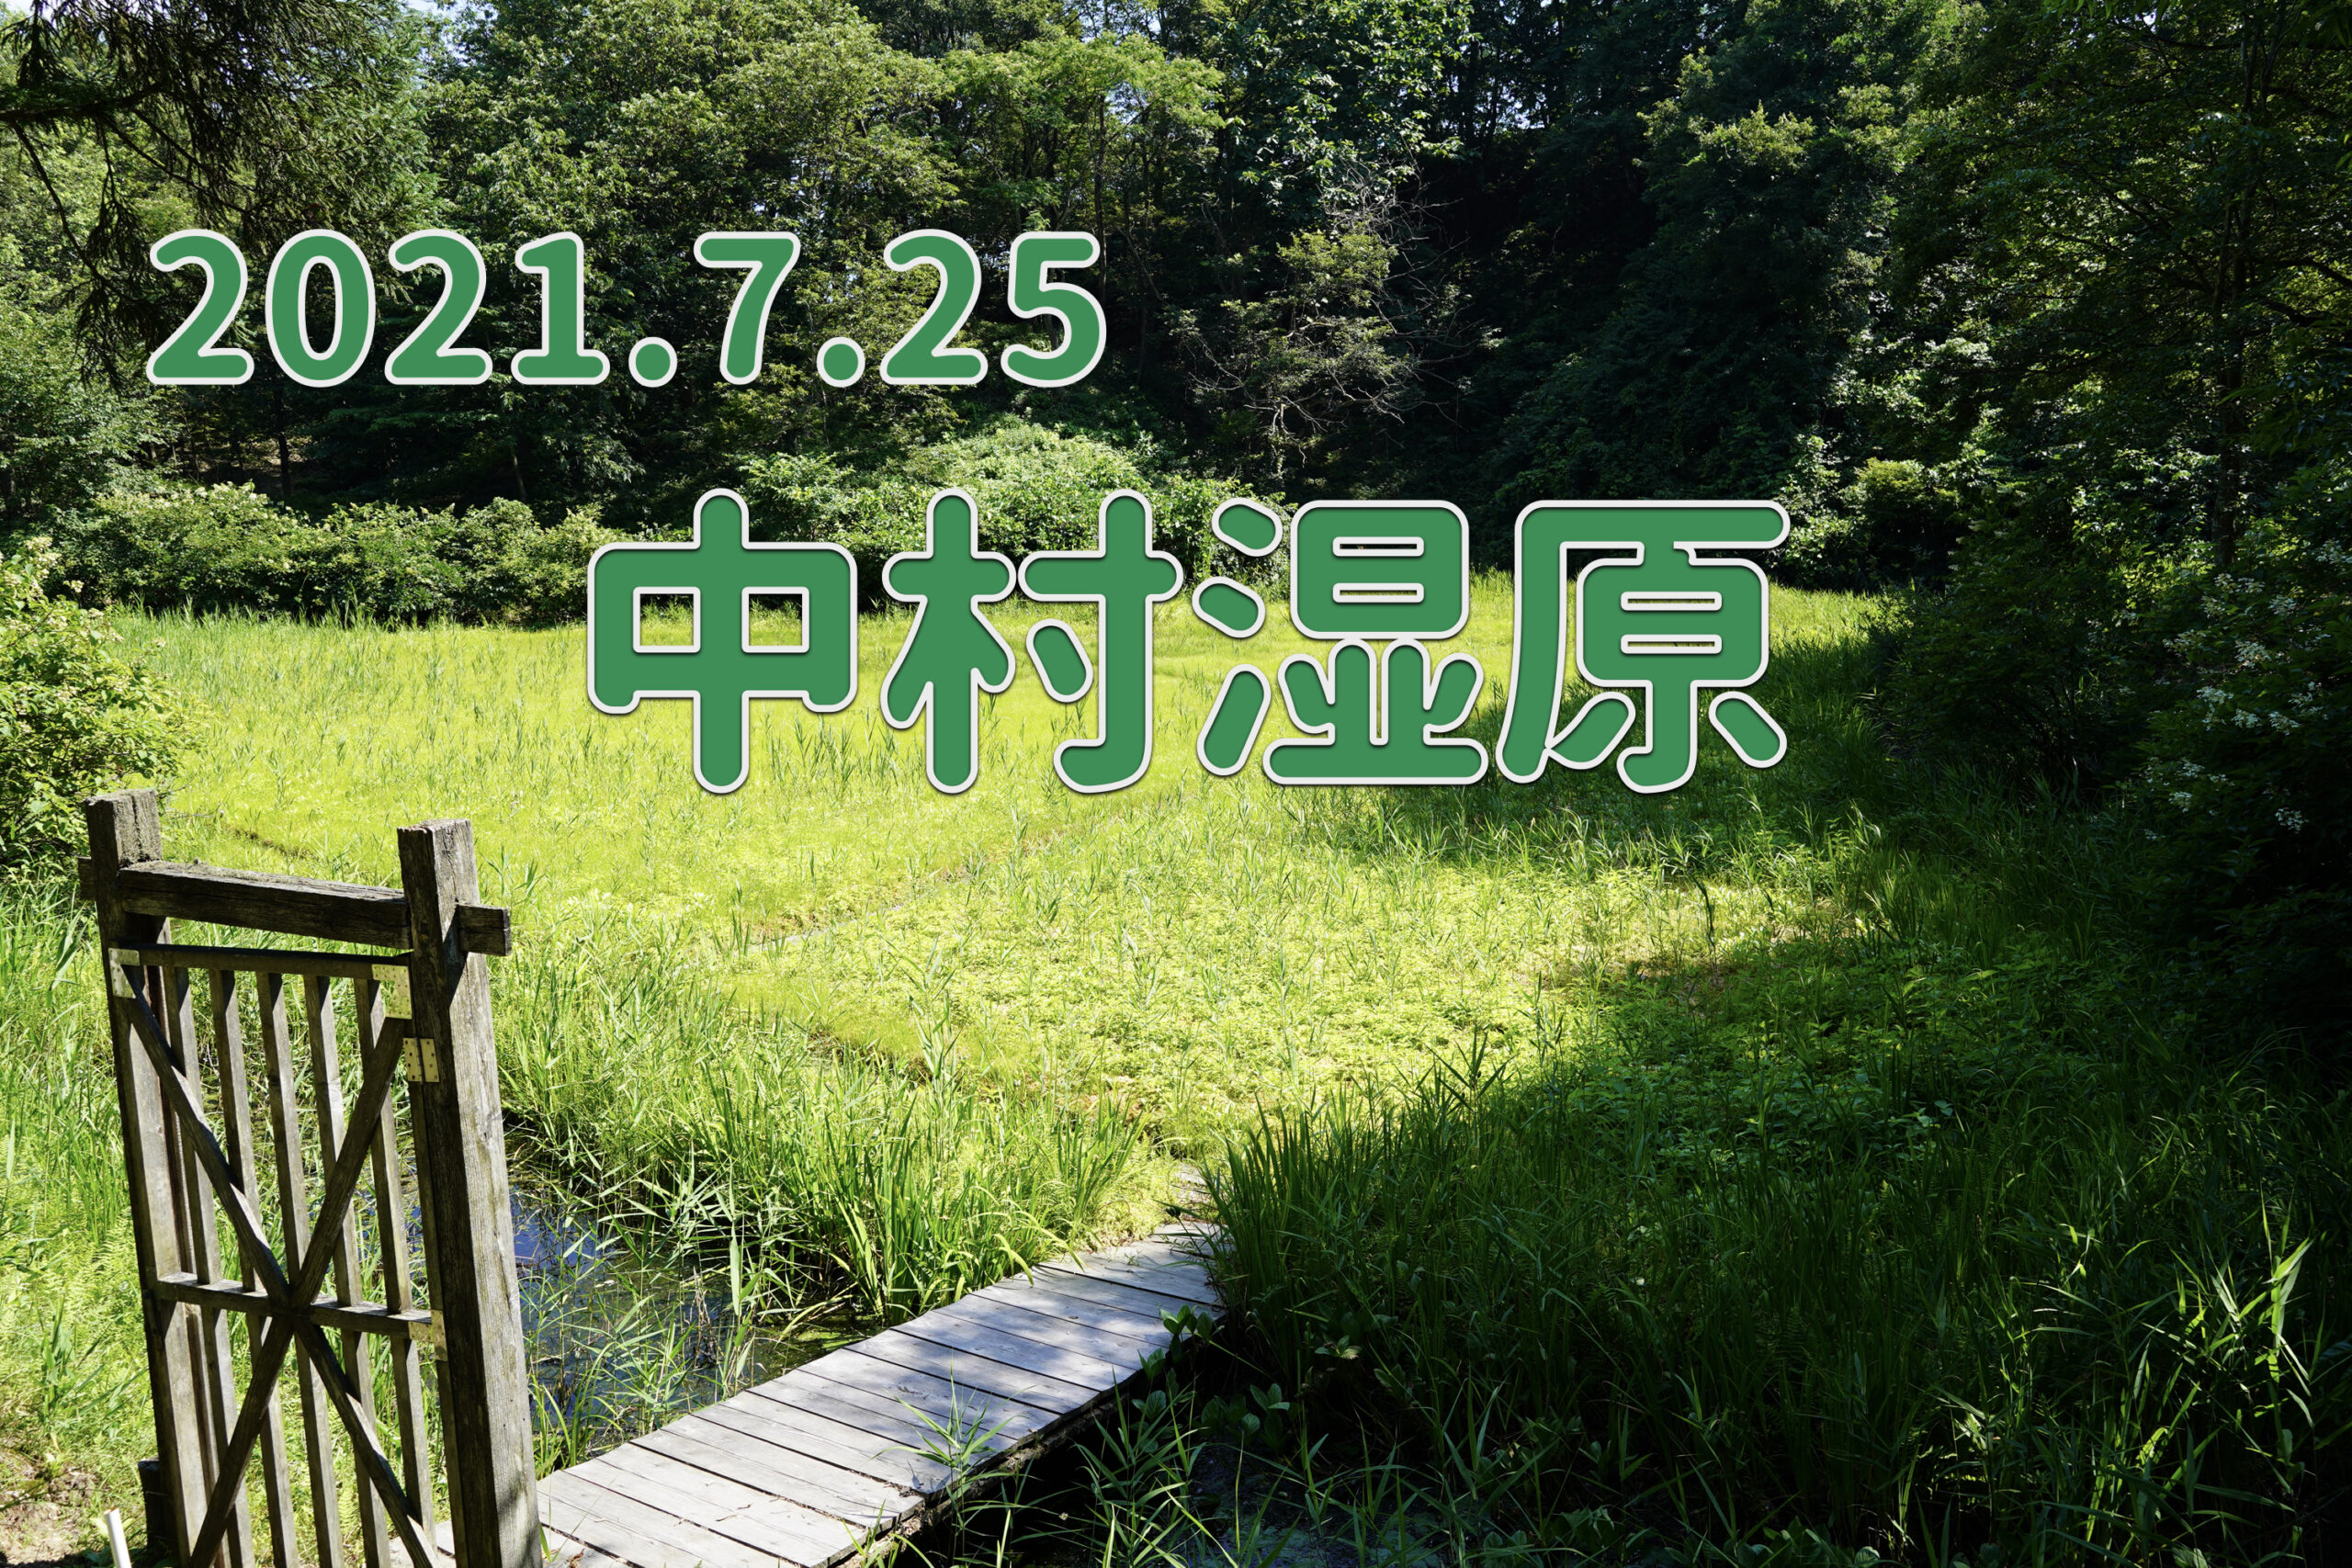 2021.7.25 中村湿原-観察に適した生物の宝庫-